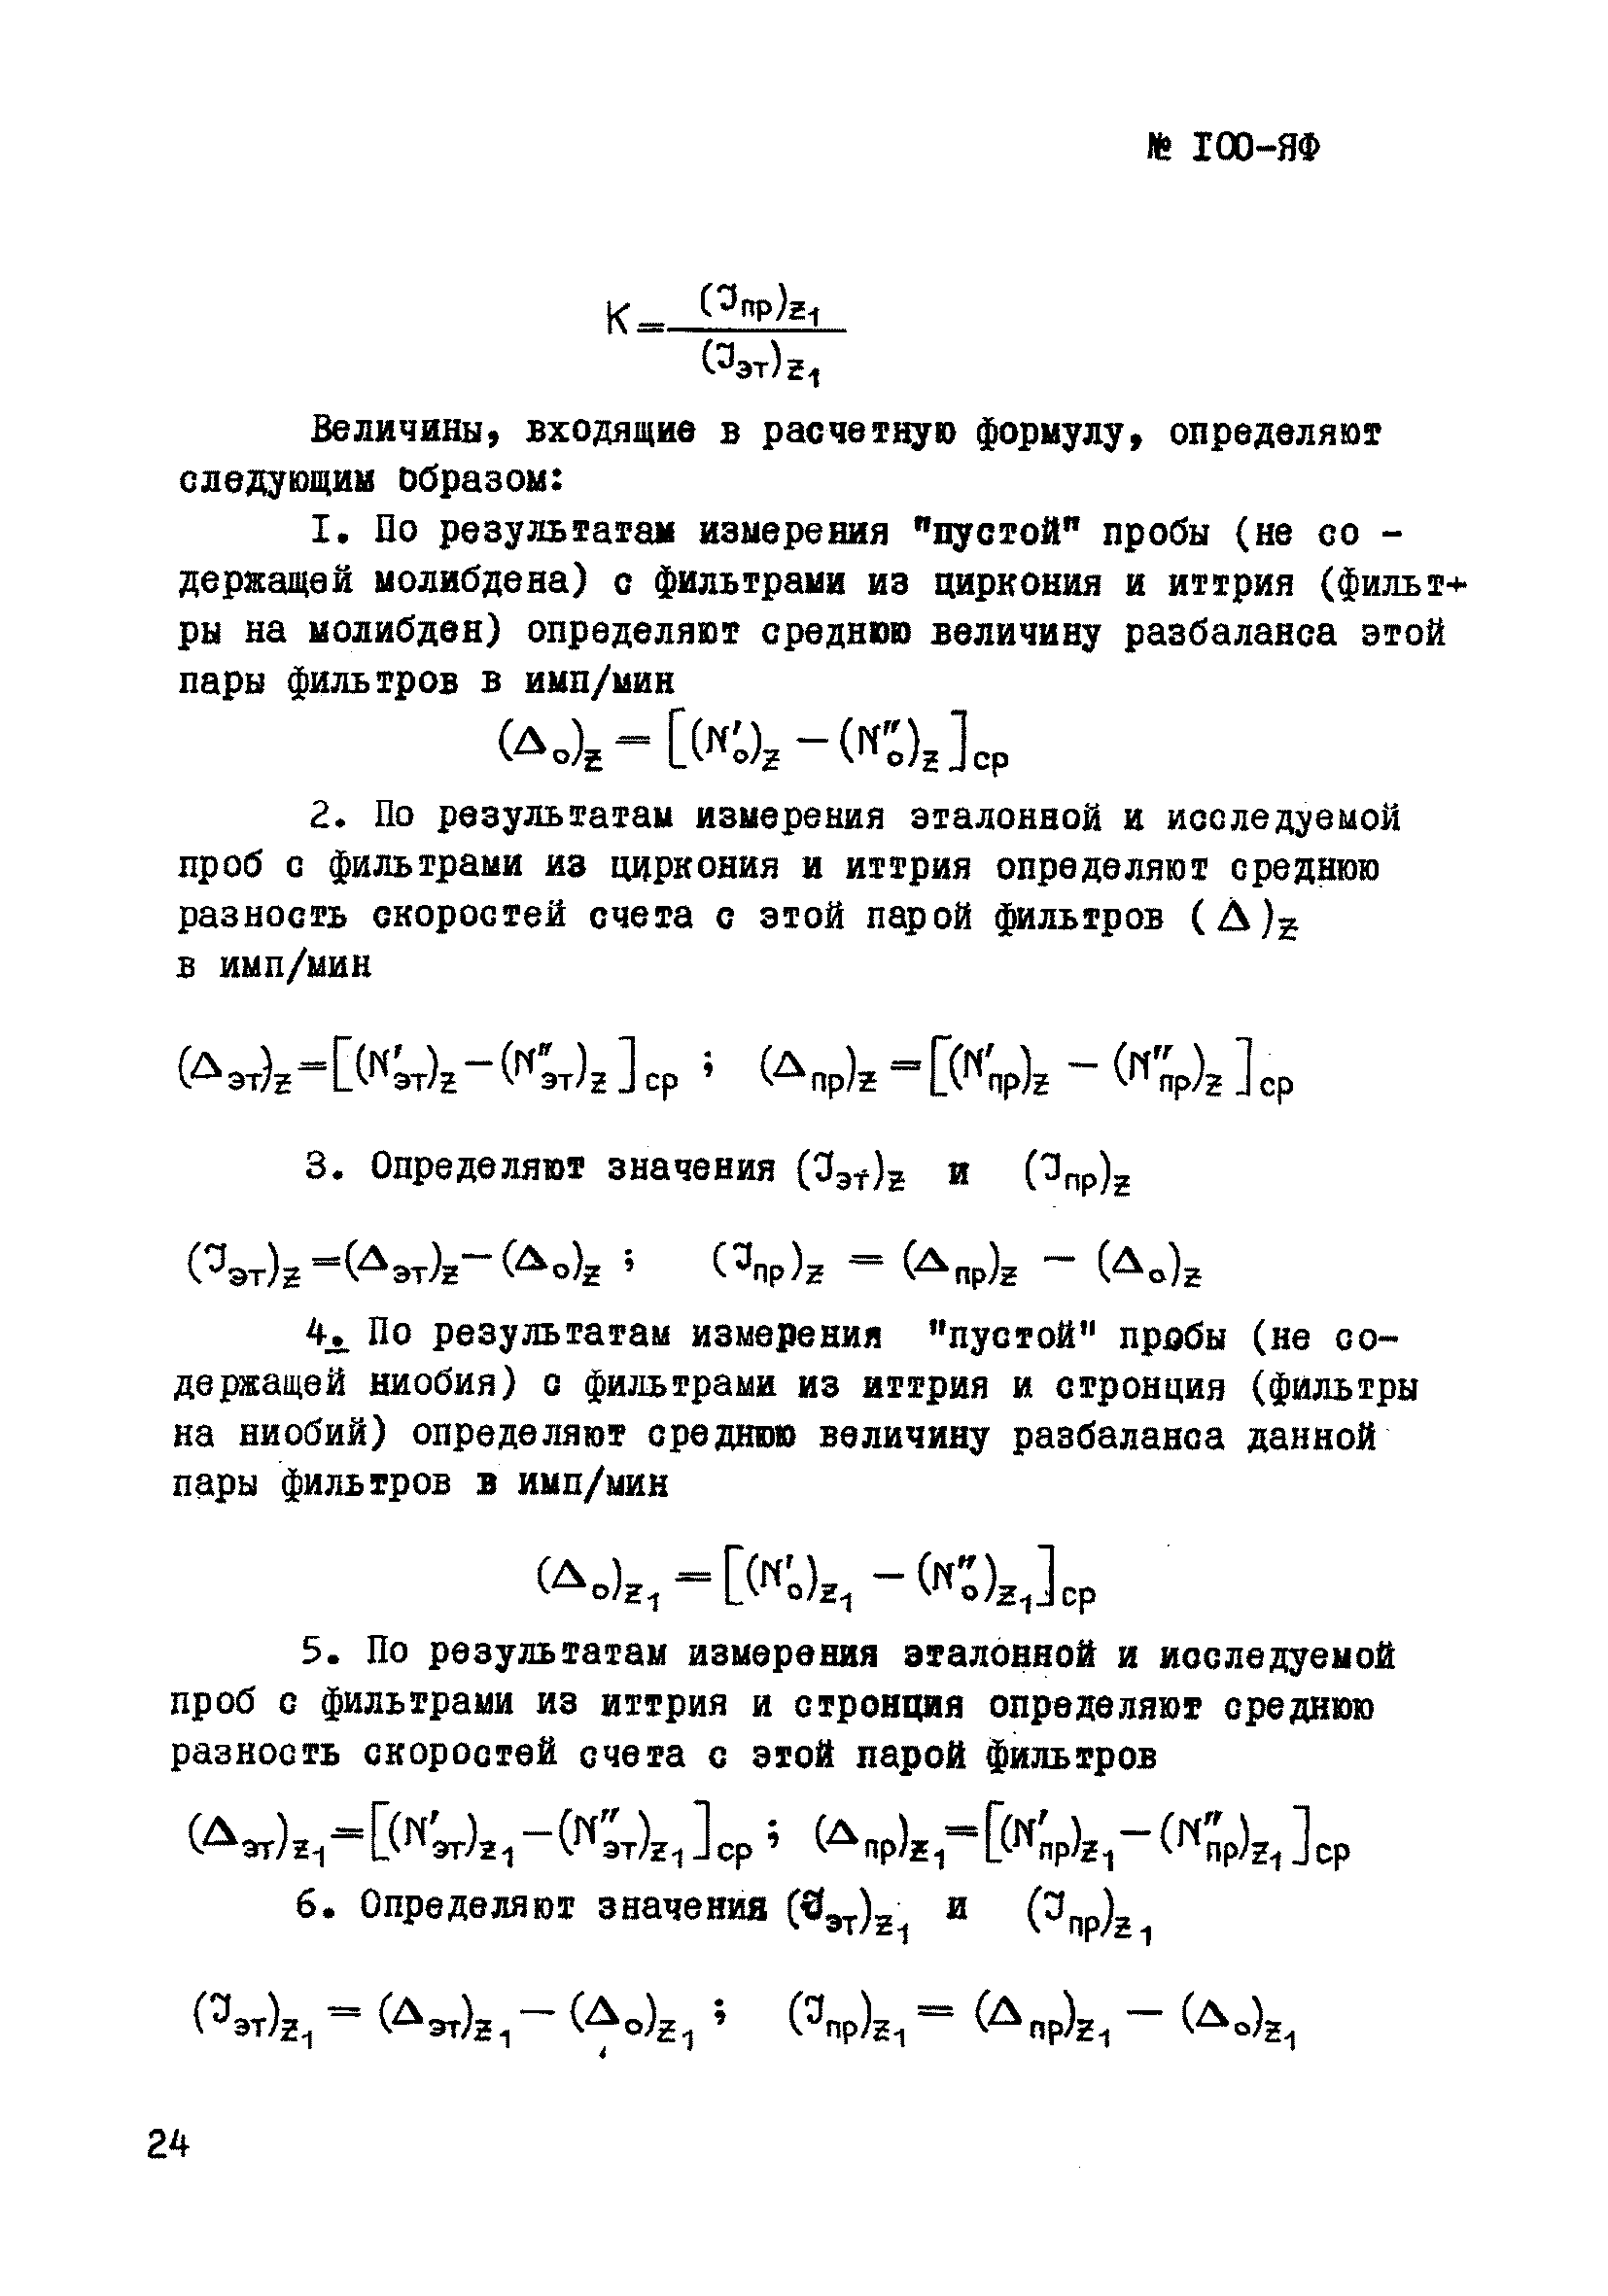 Инструкция НСАМ 100-ЯФ